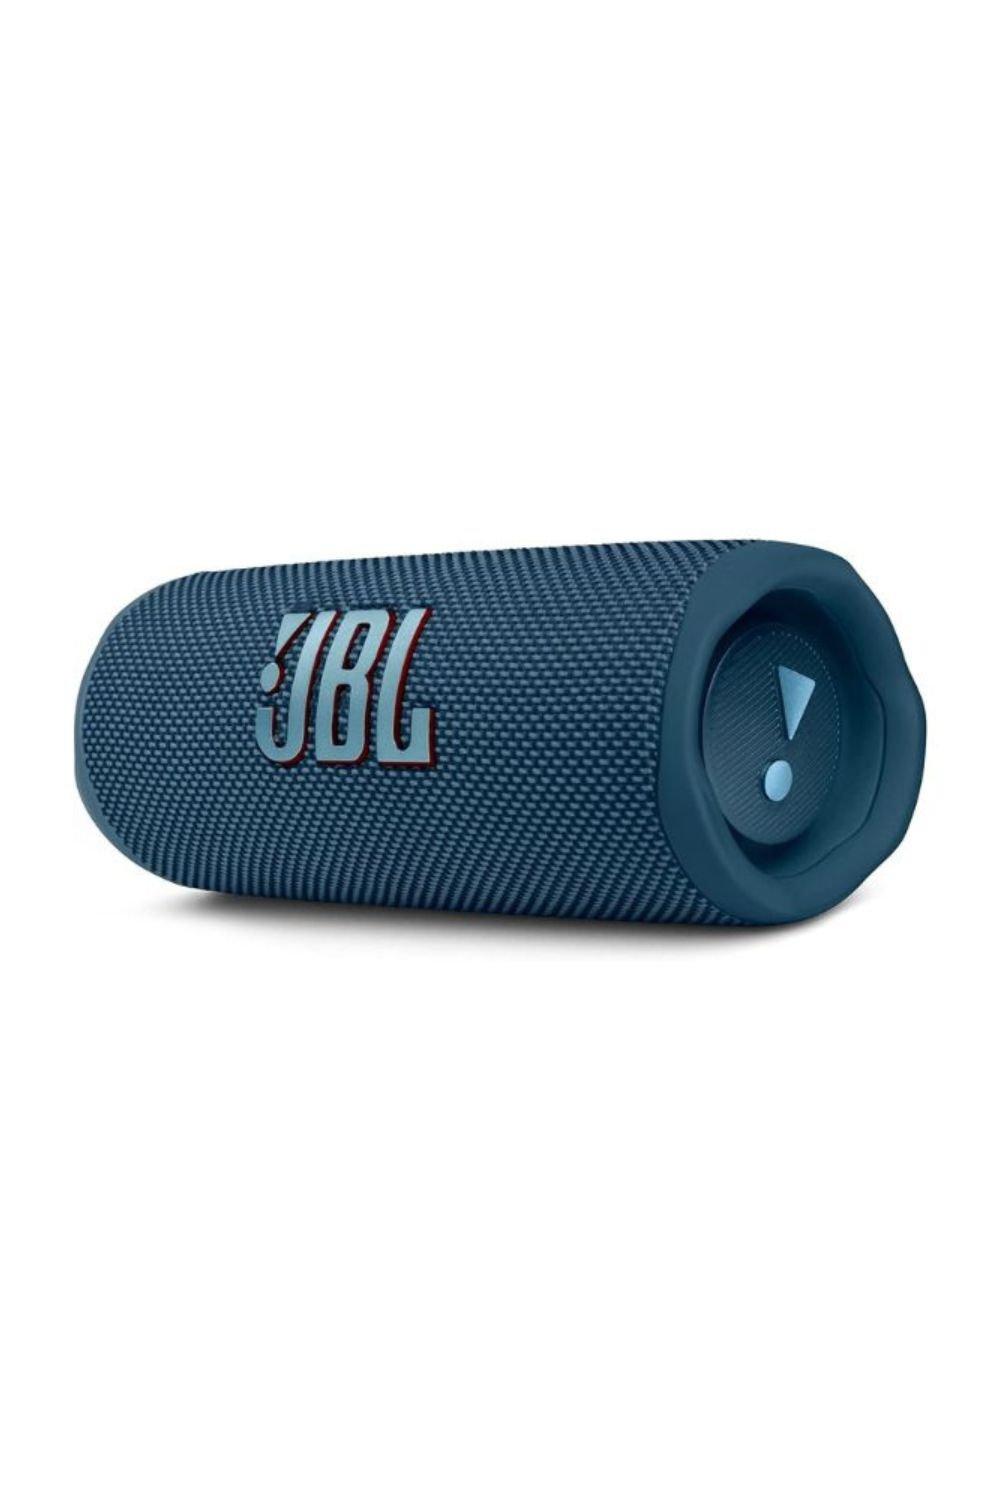 Flip 6 Portable Waterproof and Dustproof Bluetooth Speaker